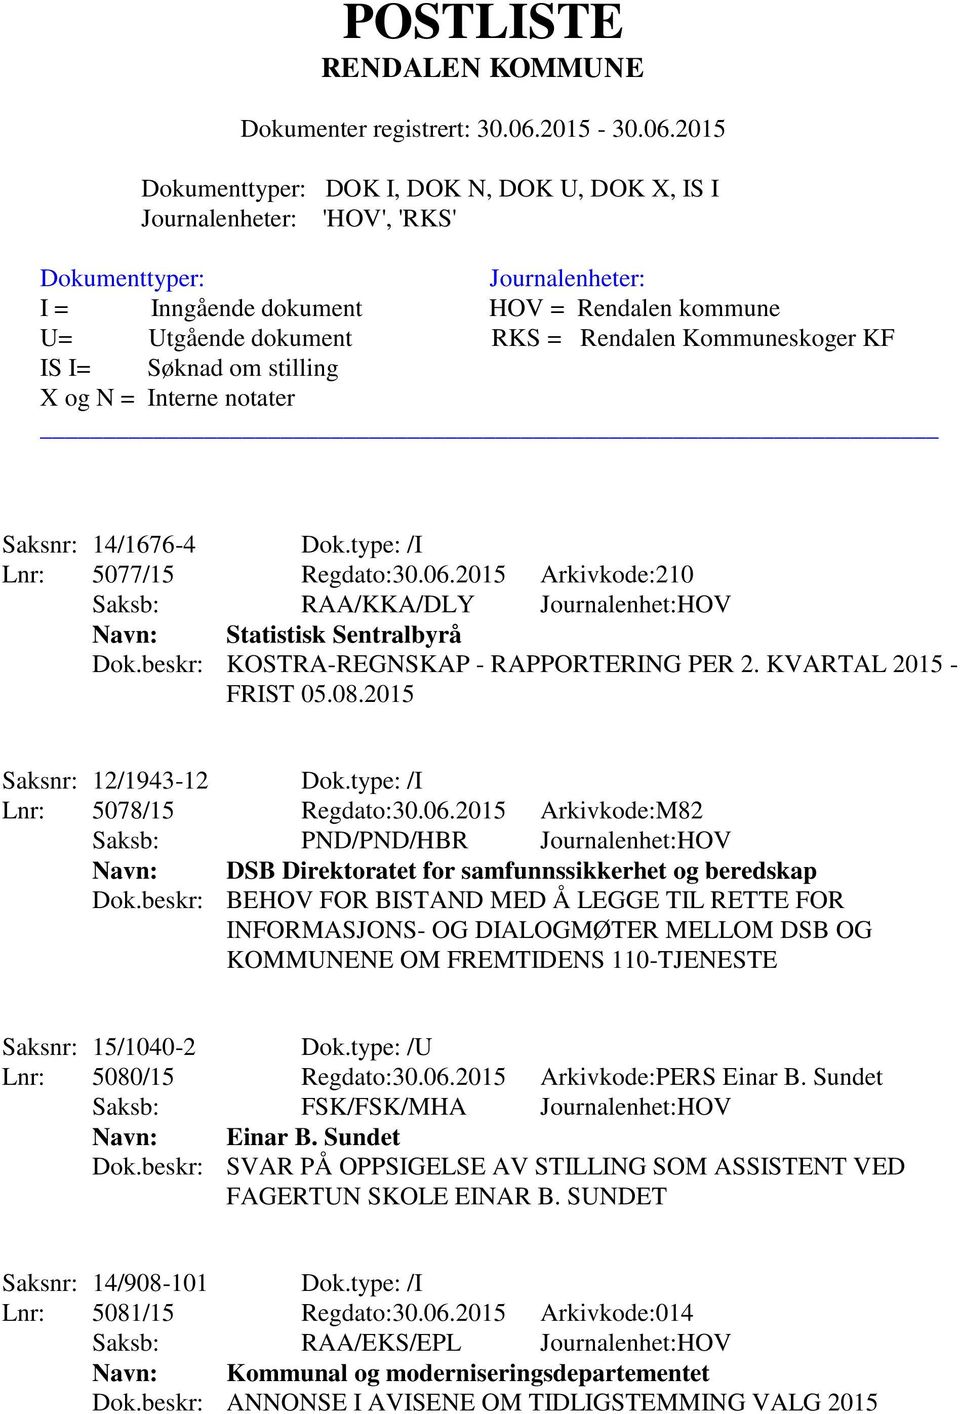 2015 Arkivkode:M82 Saksb: PND/PND/HBR Journalenhet:HOV Navn: DSB Direktoratet for samfunnssikkerhet og beredskap Dok.